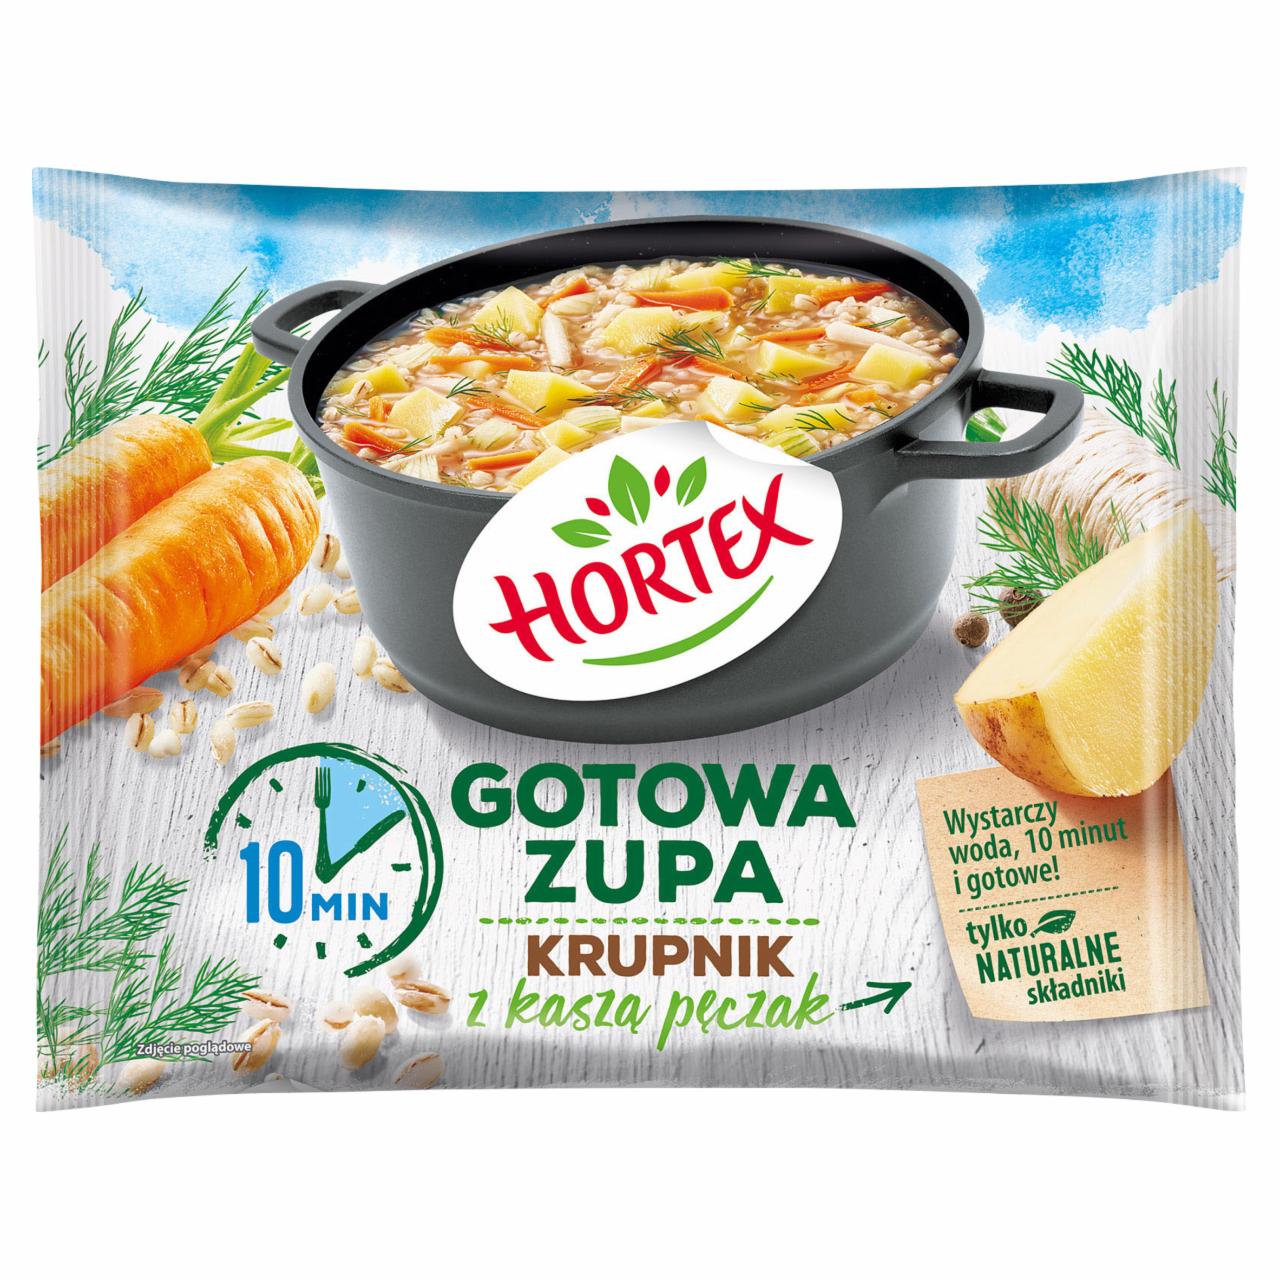 Zdjęcia - Hortex Gotowa zupa krupnik z kaszą pęczak 450 g